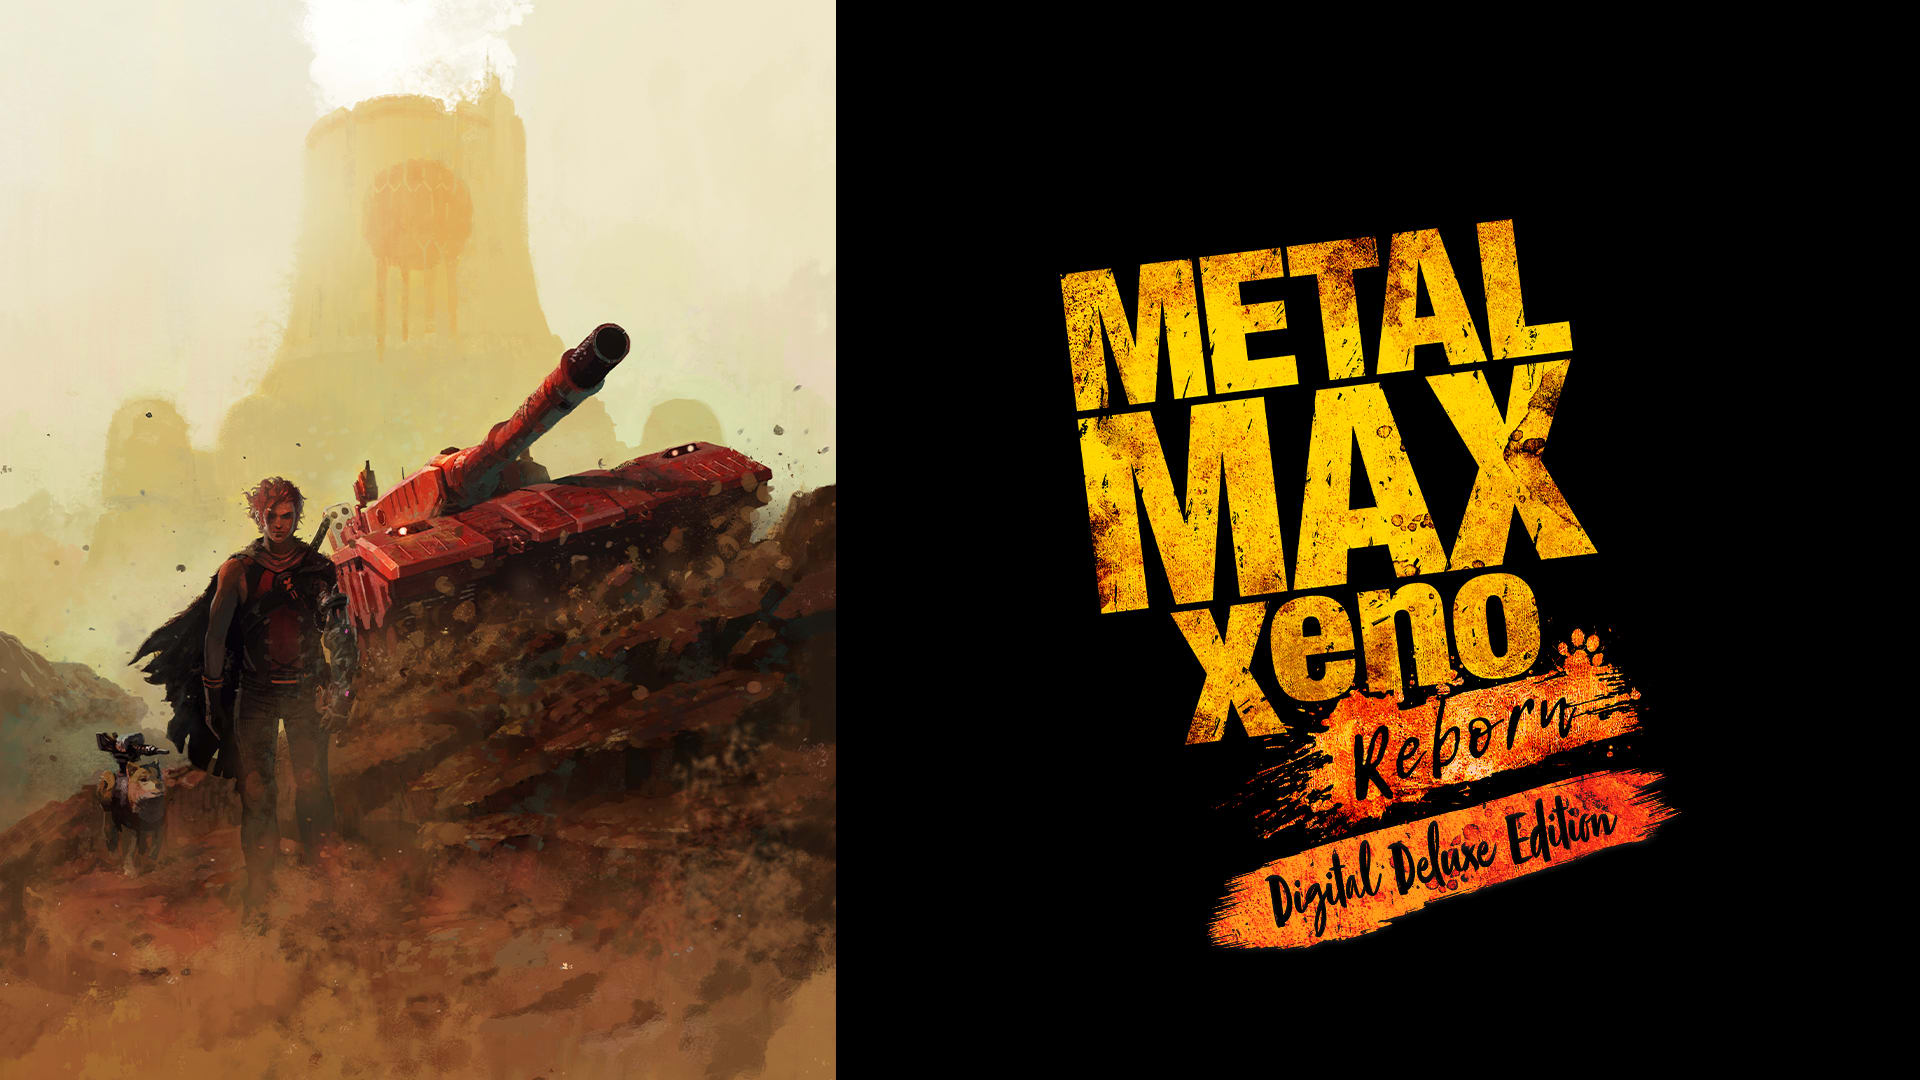 METAL MAX Xeno Reborn: Digital Deluxe Edition